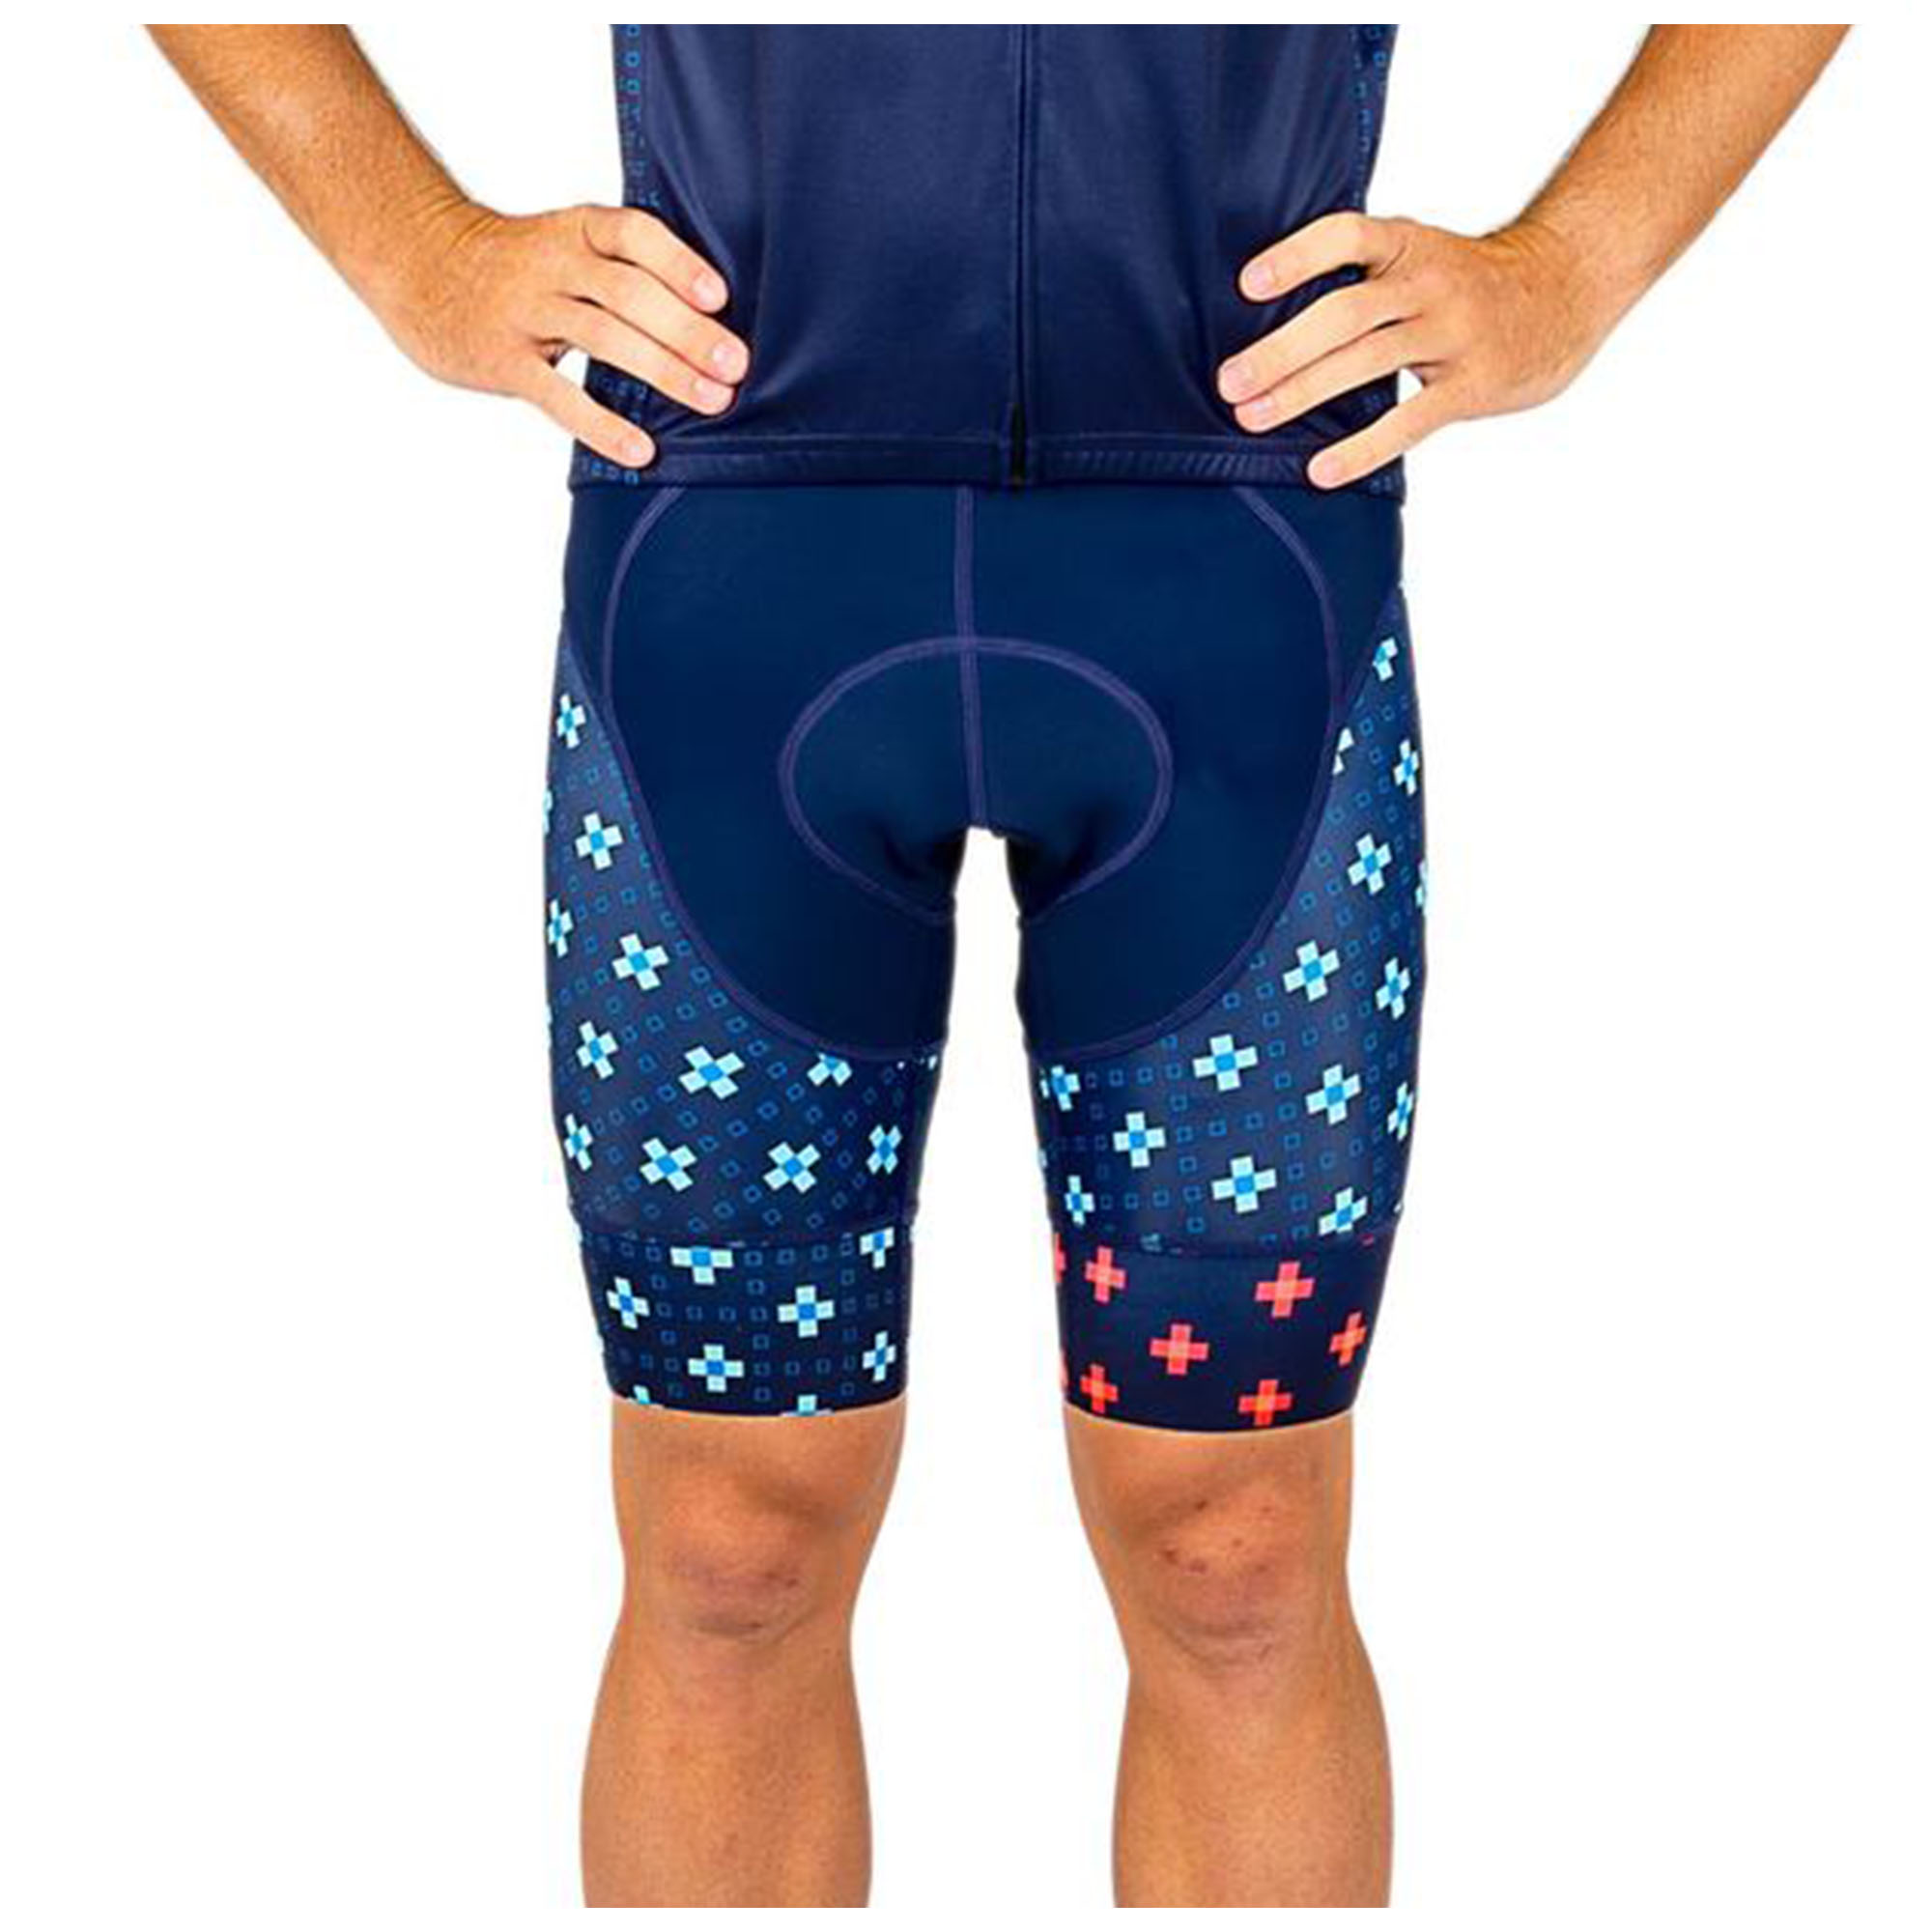 Canari Bike Shorts Size Chart